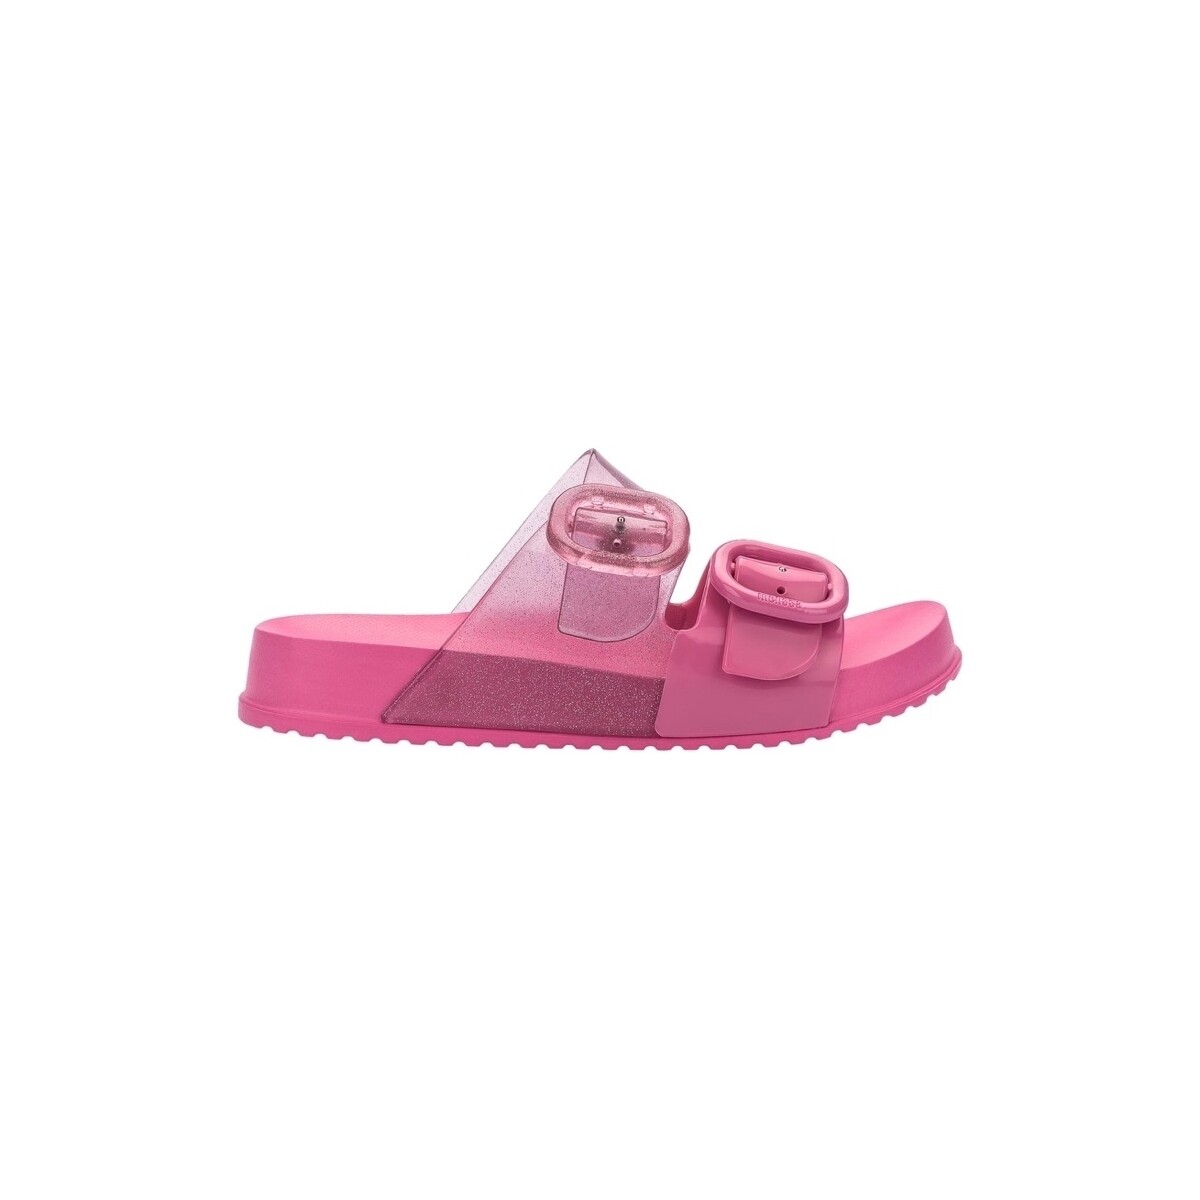 Παπούτσια Παιδί Σανδάλια / Πέδιλα Melissa MINI  Kids Cozy Slide - Glitter Pink Ροζ